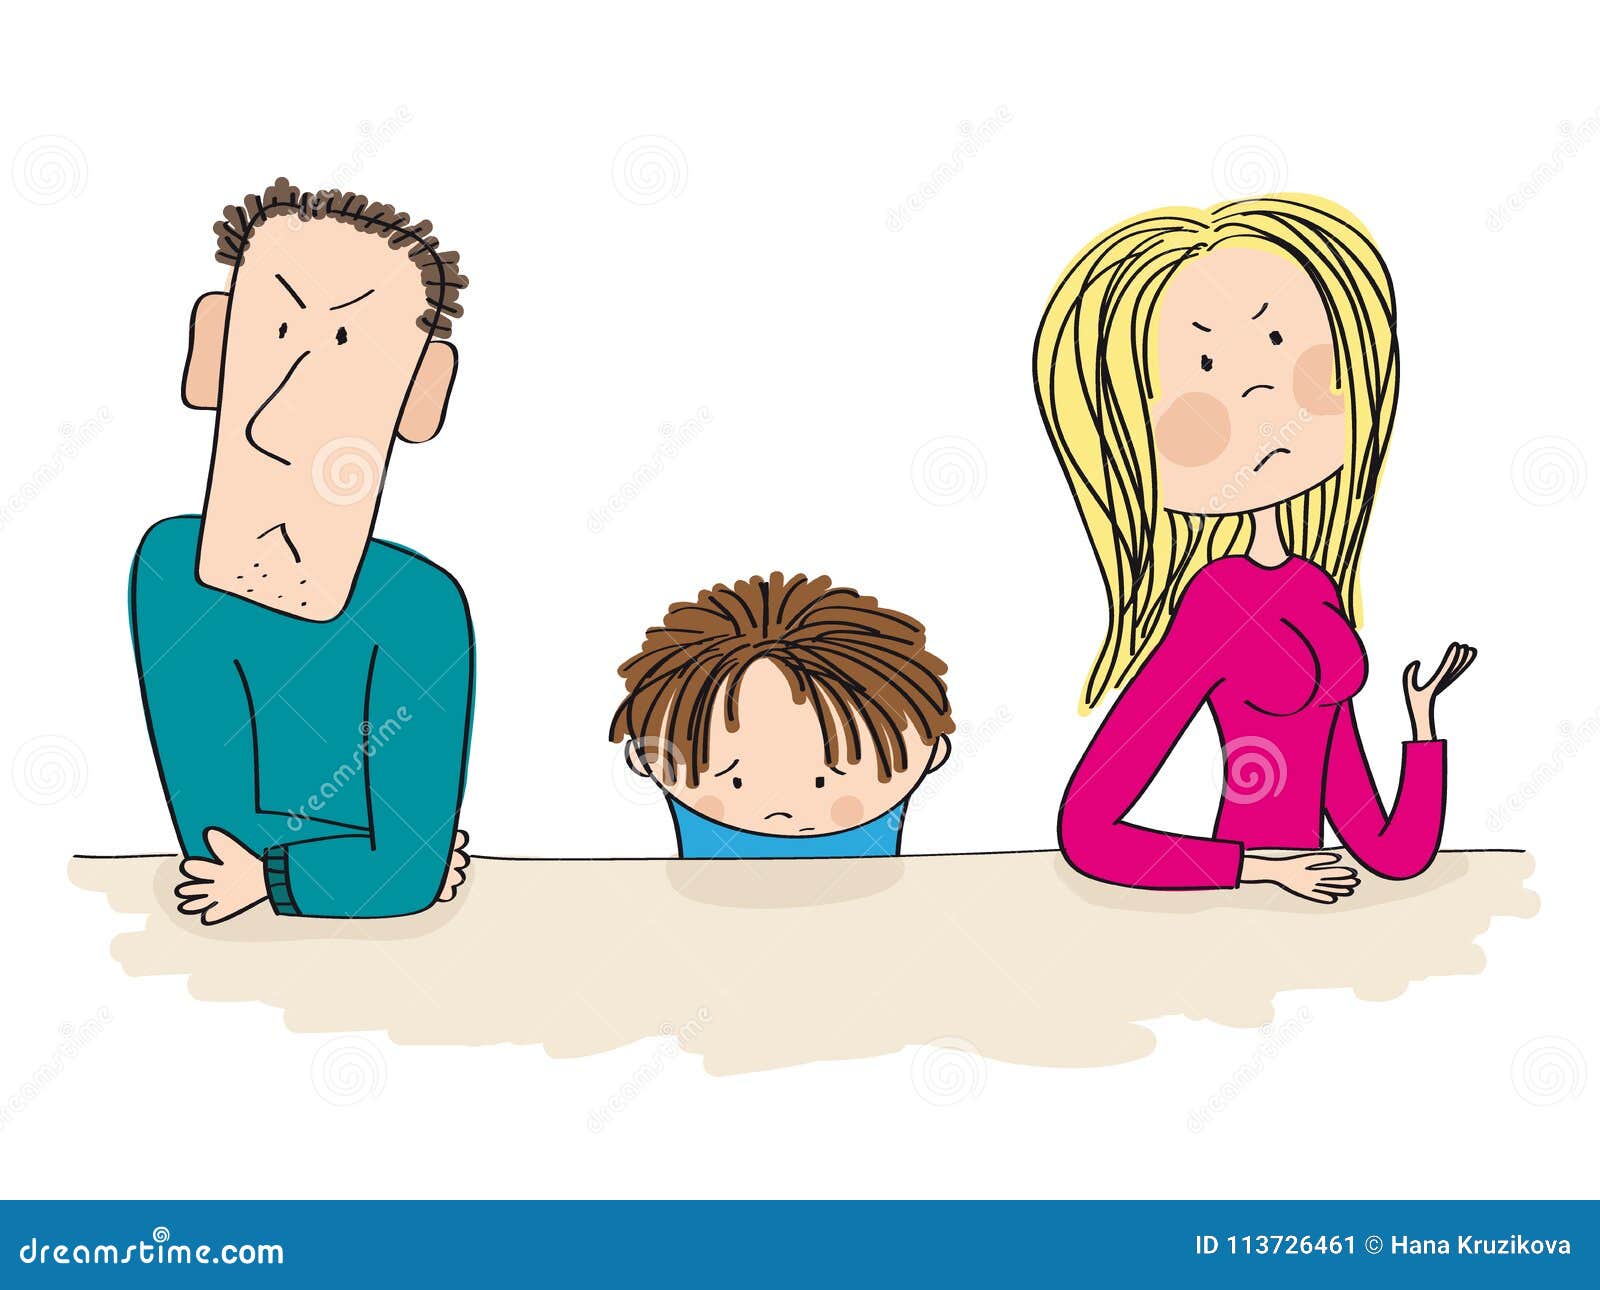 Мама папа ссорятся. Ссора между родителями и детьми. Ссора в семье иллюстрация. Ссоры в семье нарисованные. Ссора с родителями иллюстрация.